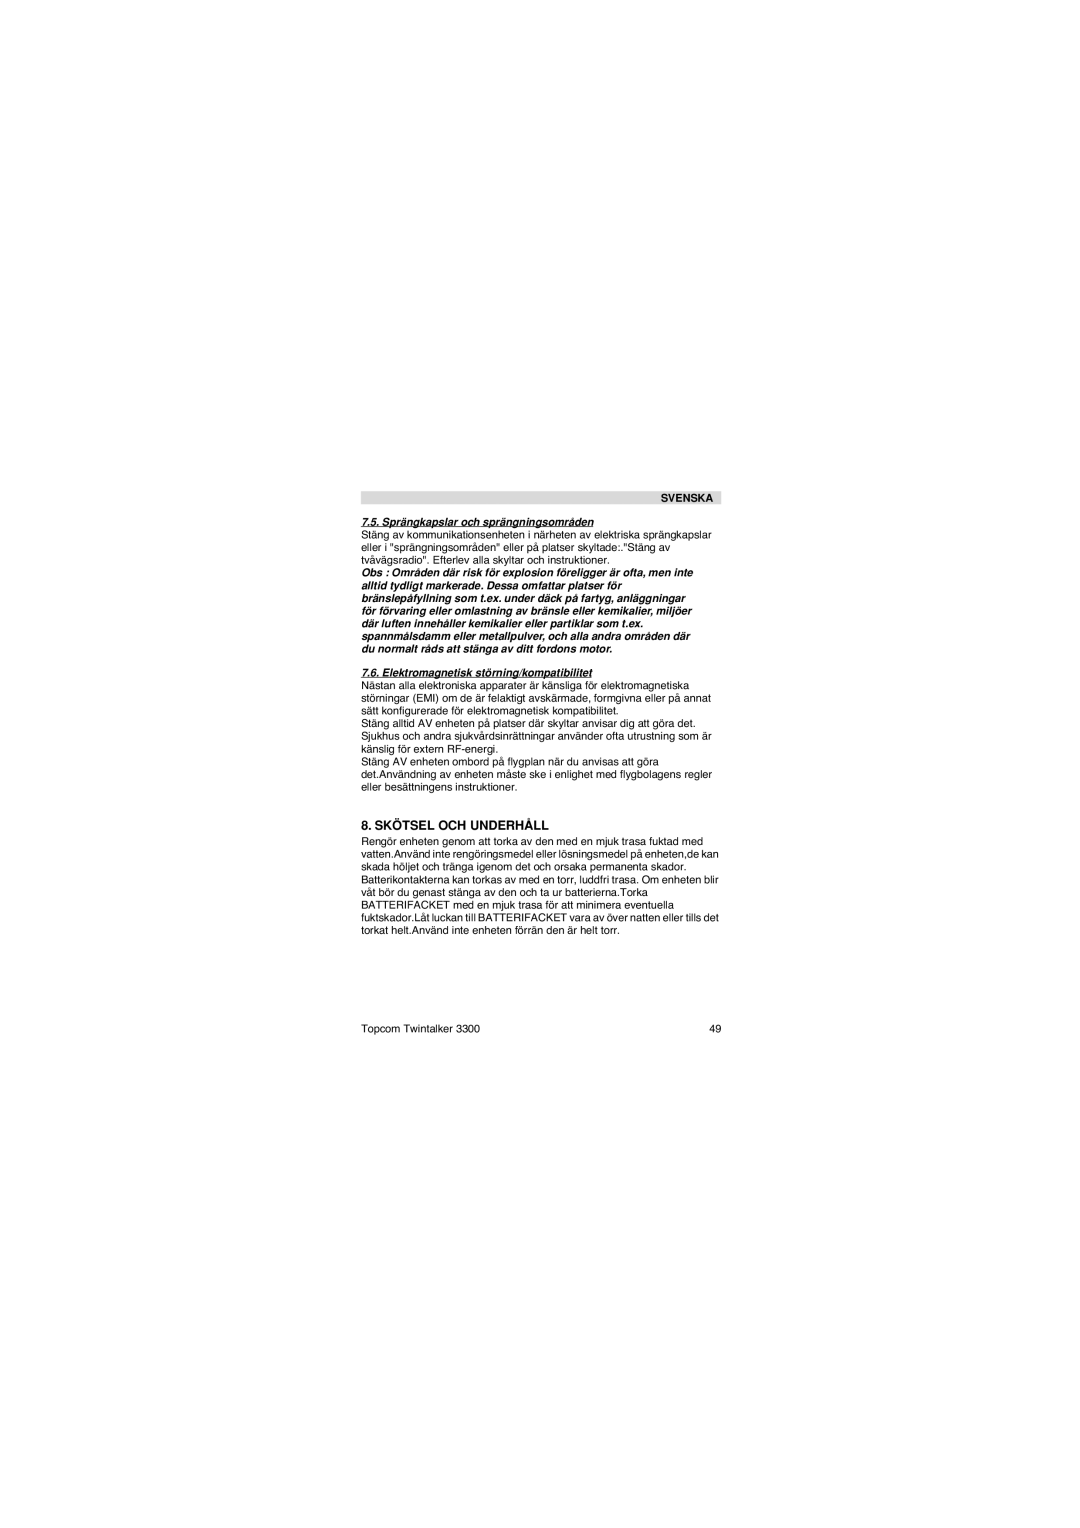 Topcom 3300 user manual Skötsel OCH Underhåll, Sprängkapslar och sprängningsområden 